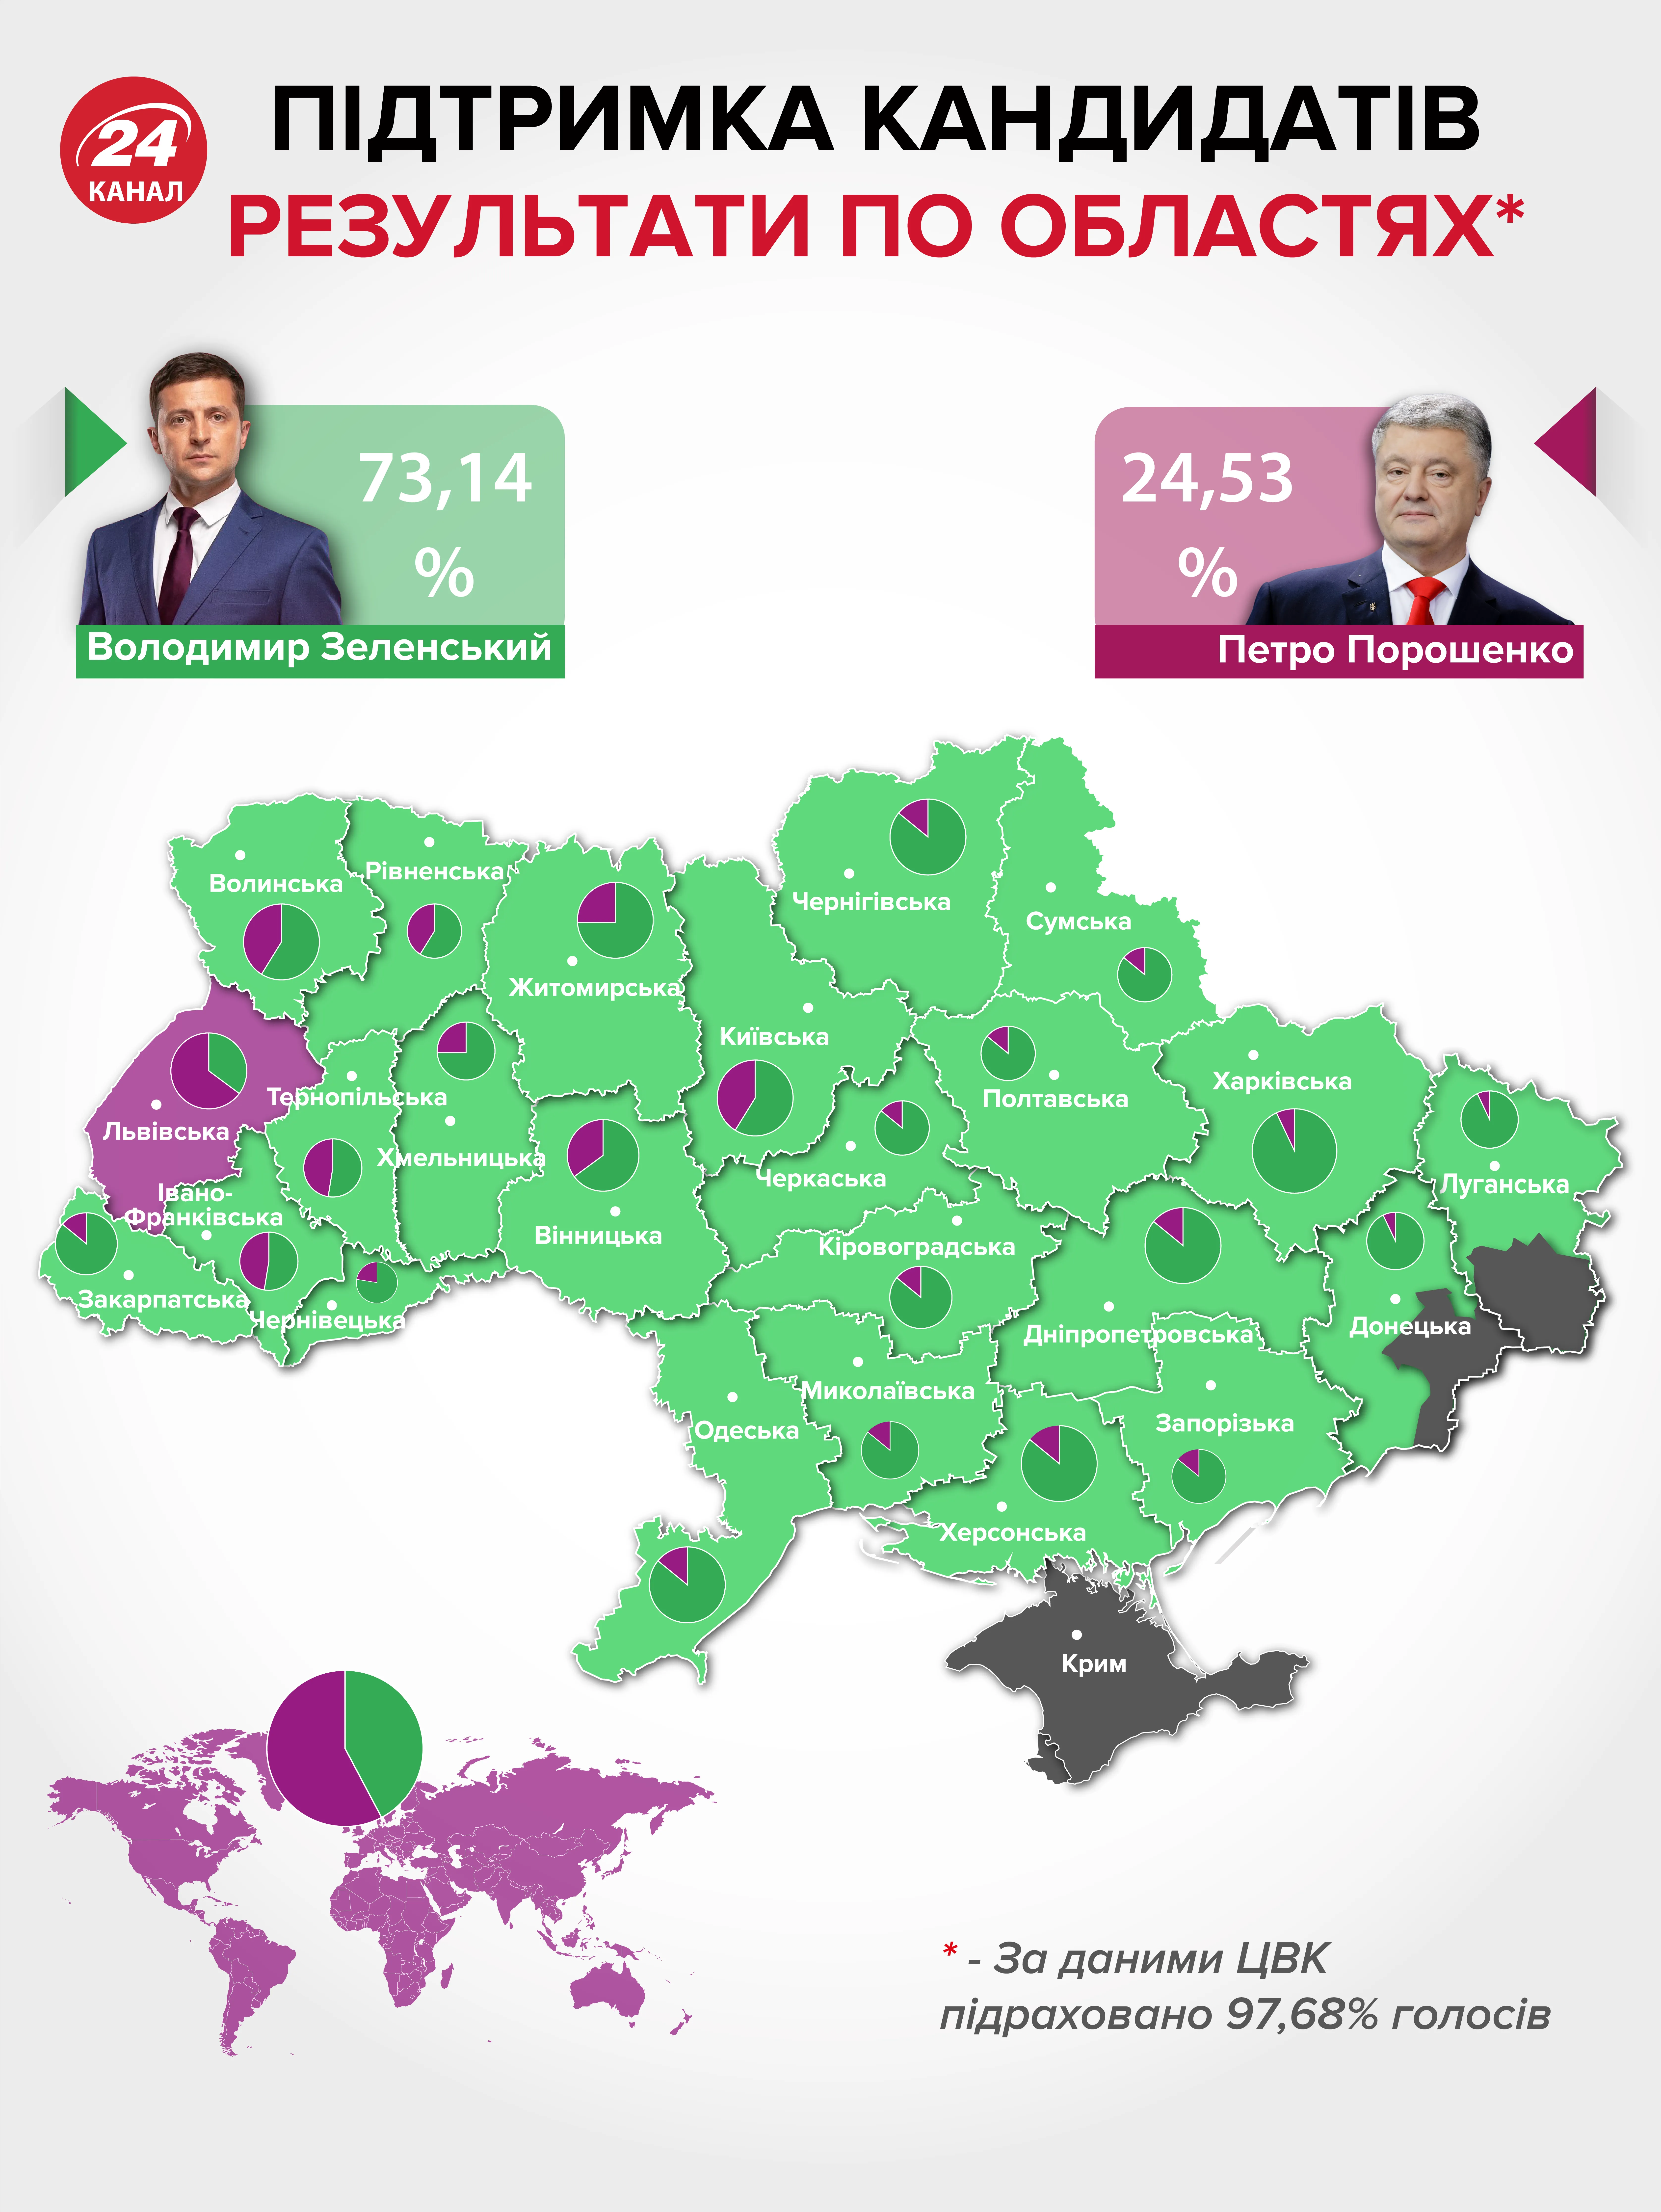 вибори президента України результати другий тур інфографіка